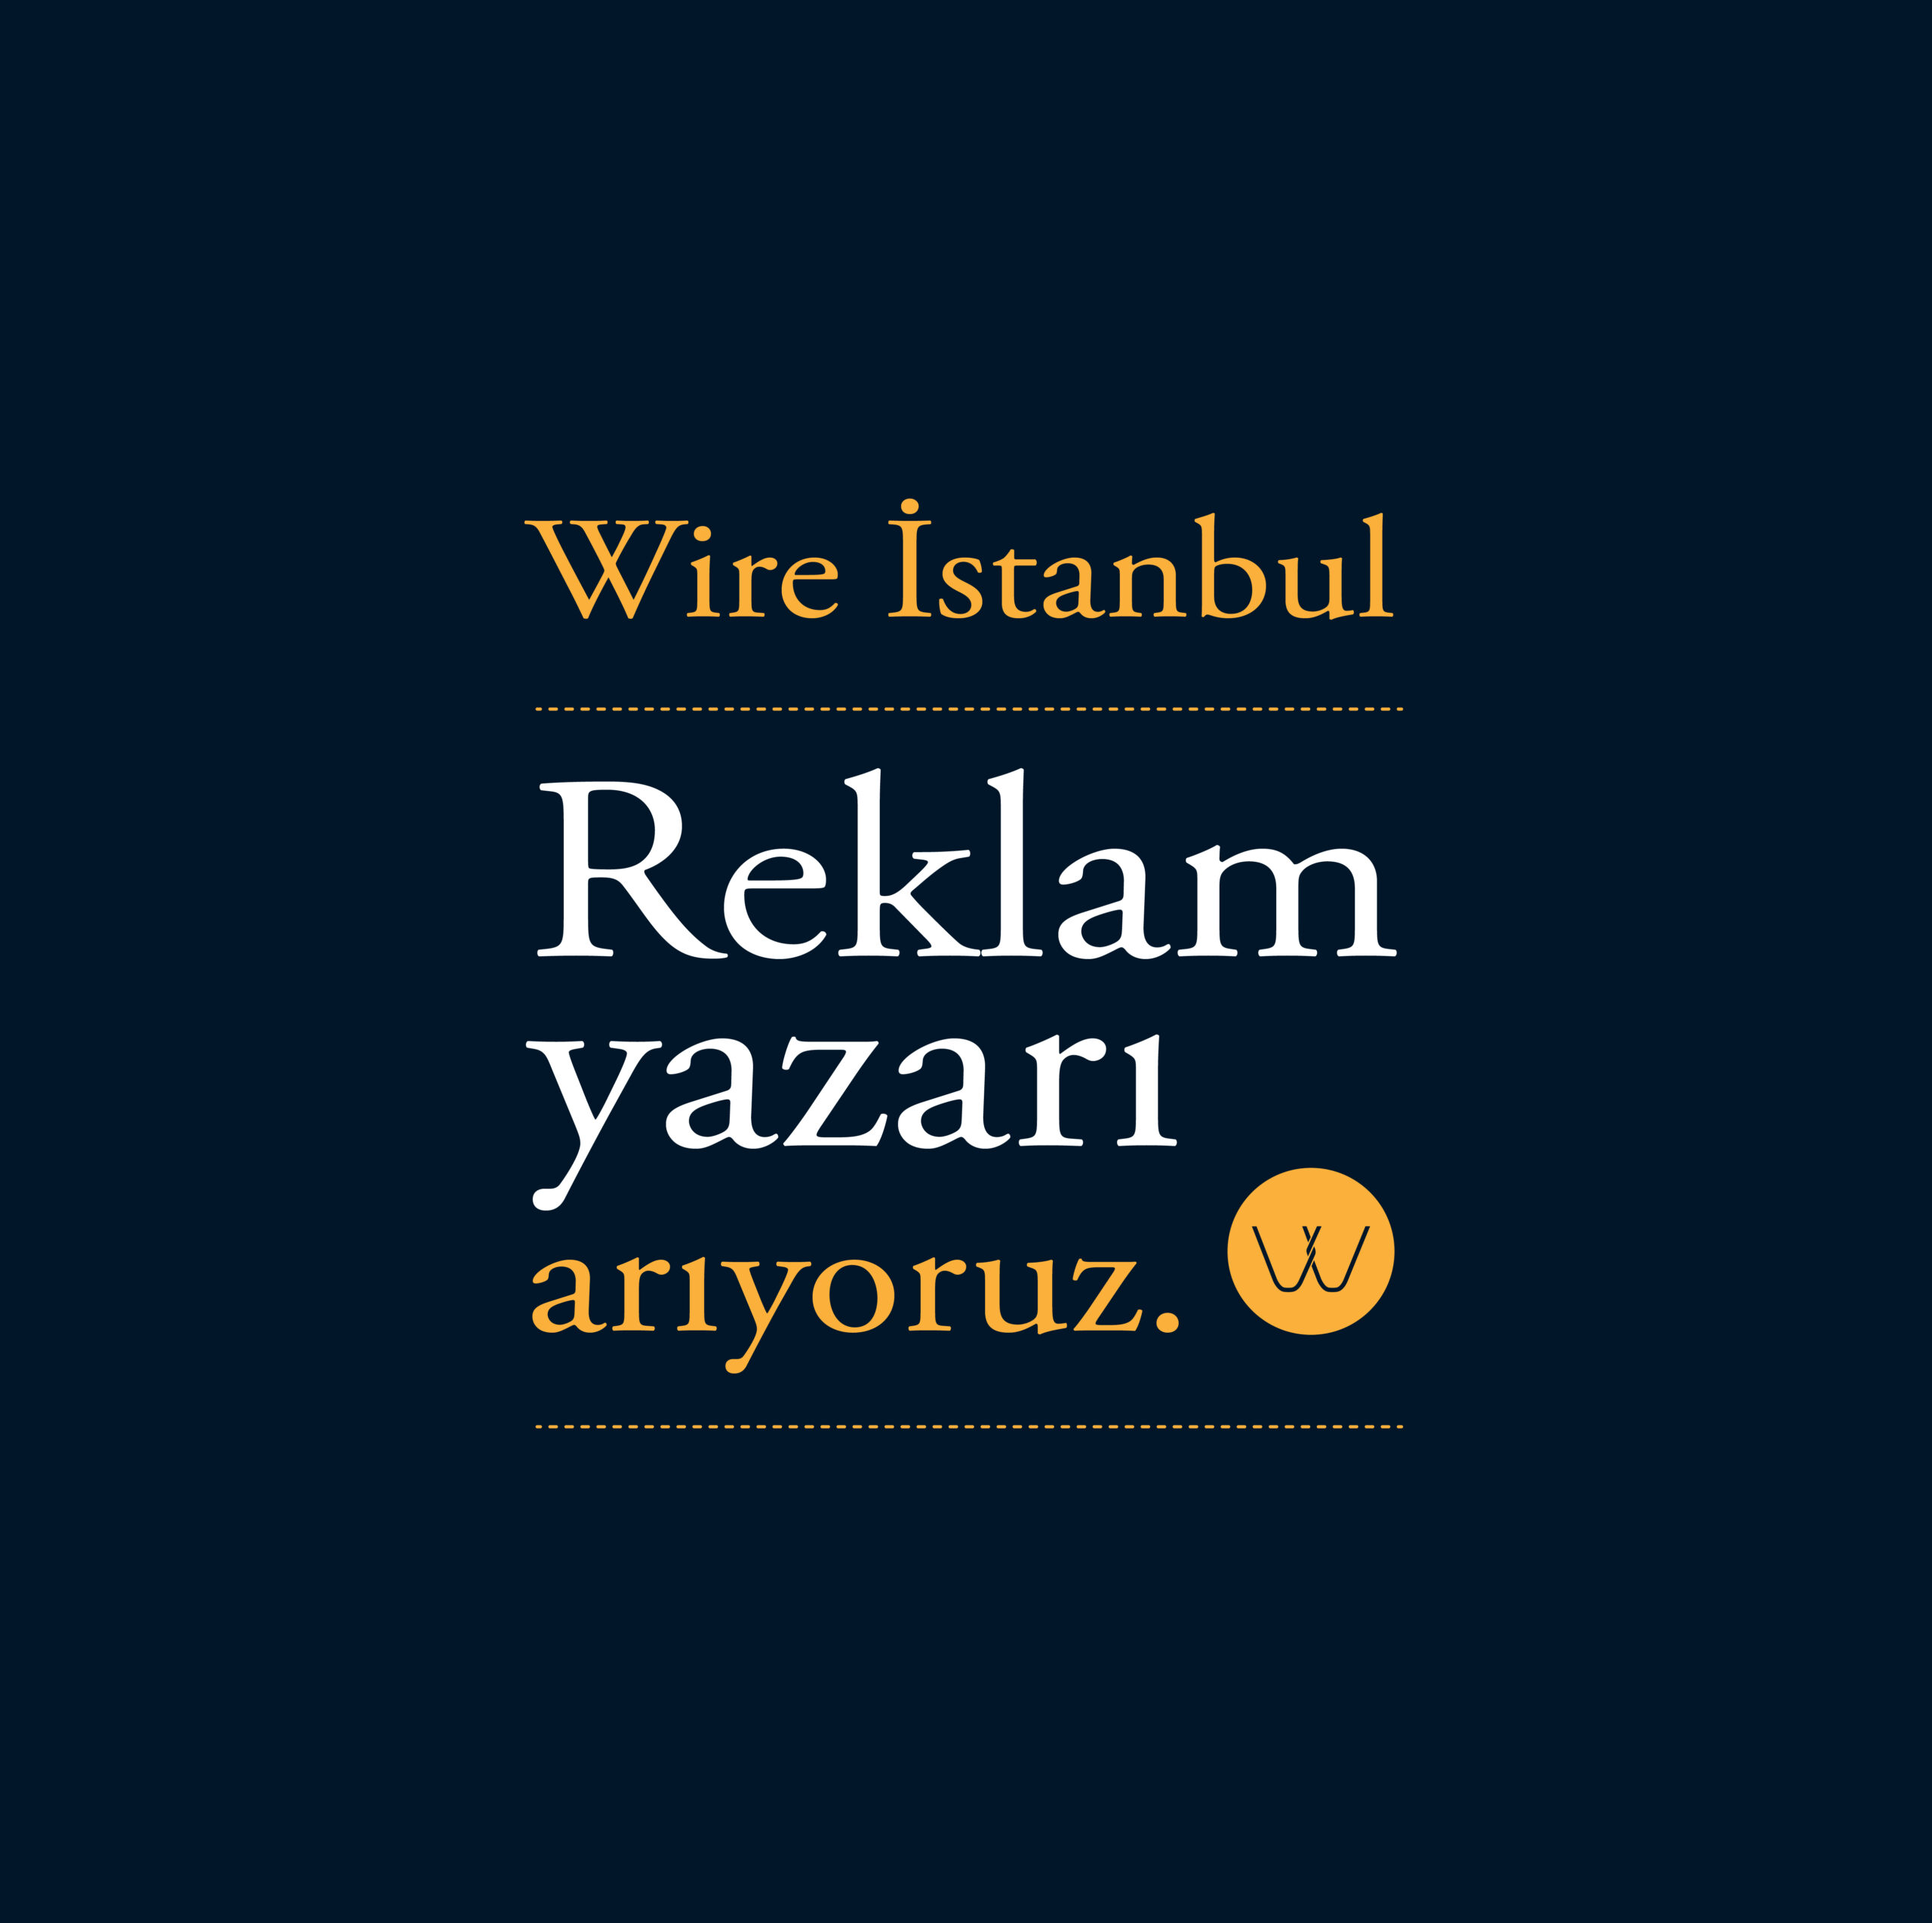 Wire İstanbul Reklam Yazarı arıyor!